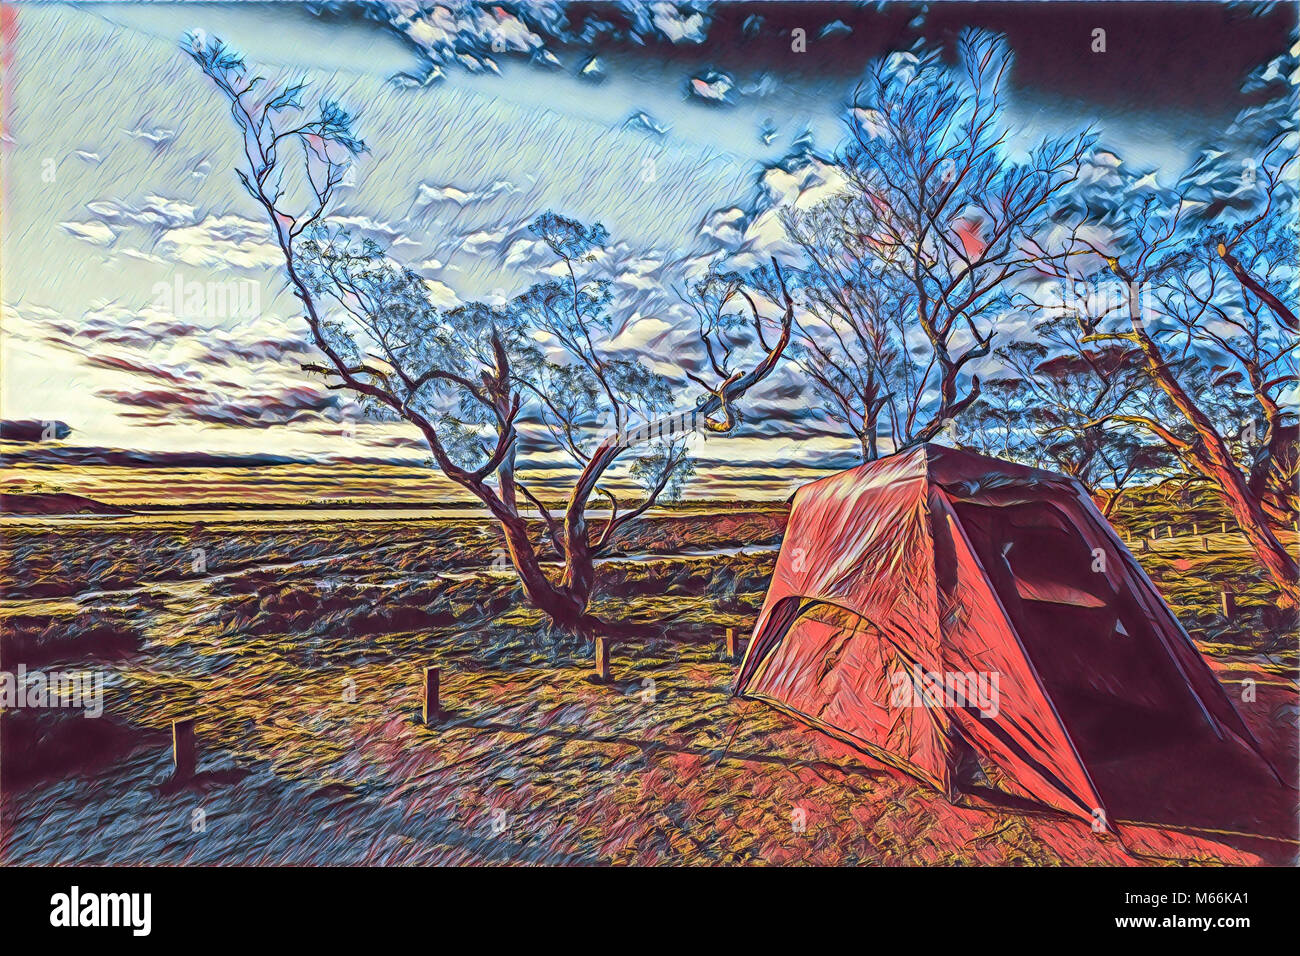 Dessin numérique d'une tente dans la campagne Banque D'Images